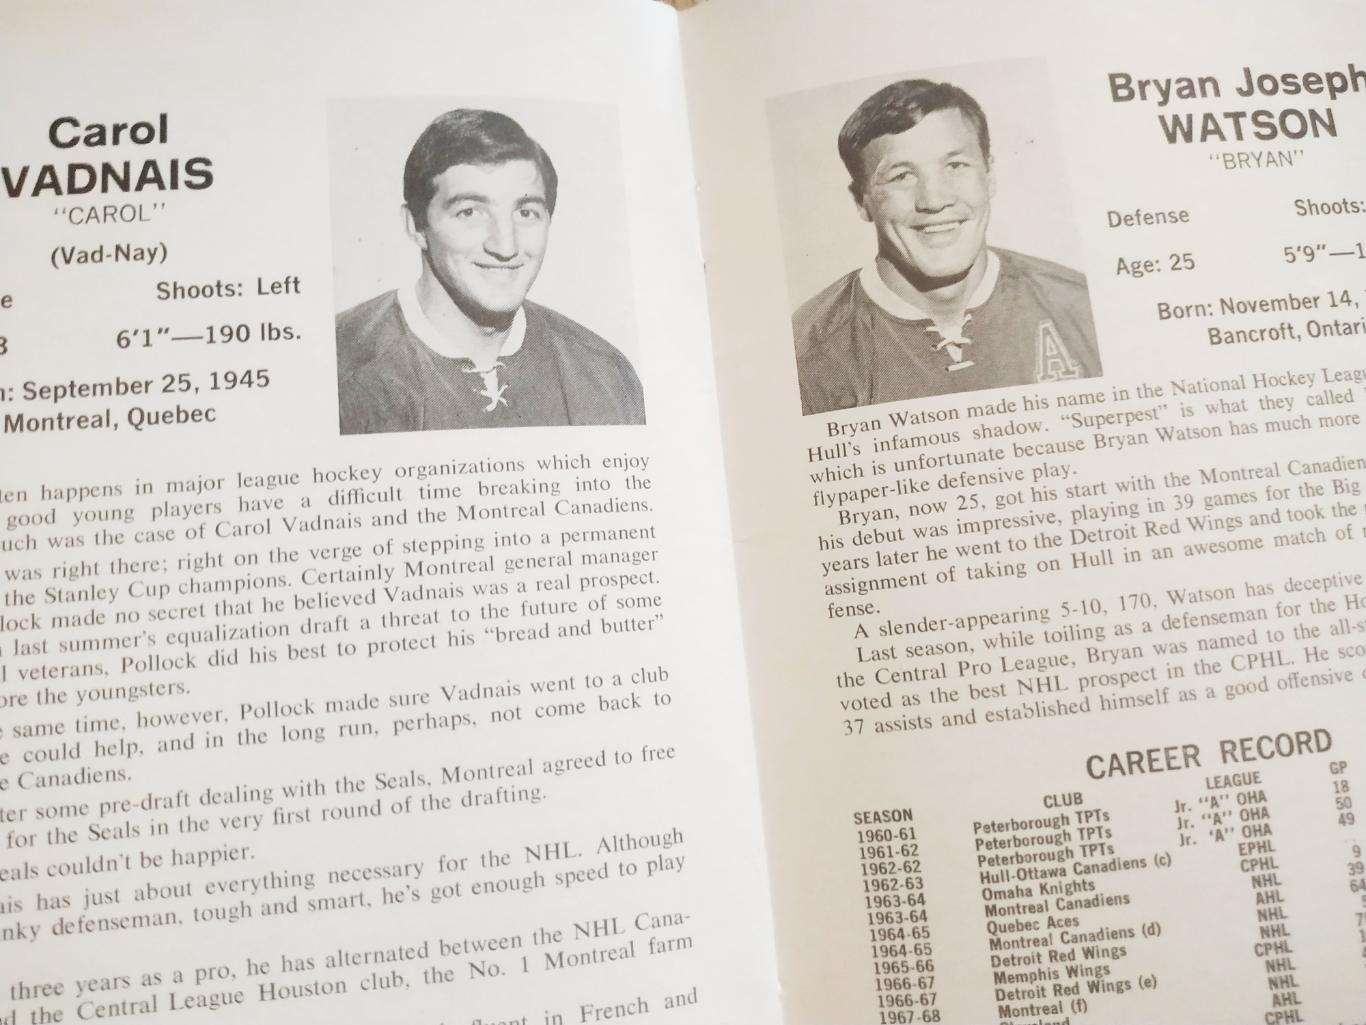 ХОККЕЙ СПРАВОЧНИК ЕЖЕГОДНИК НХЛ 1968-69 NHL OKLAND SEALS OFFICIAL GUIDE 5